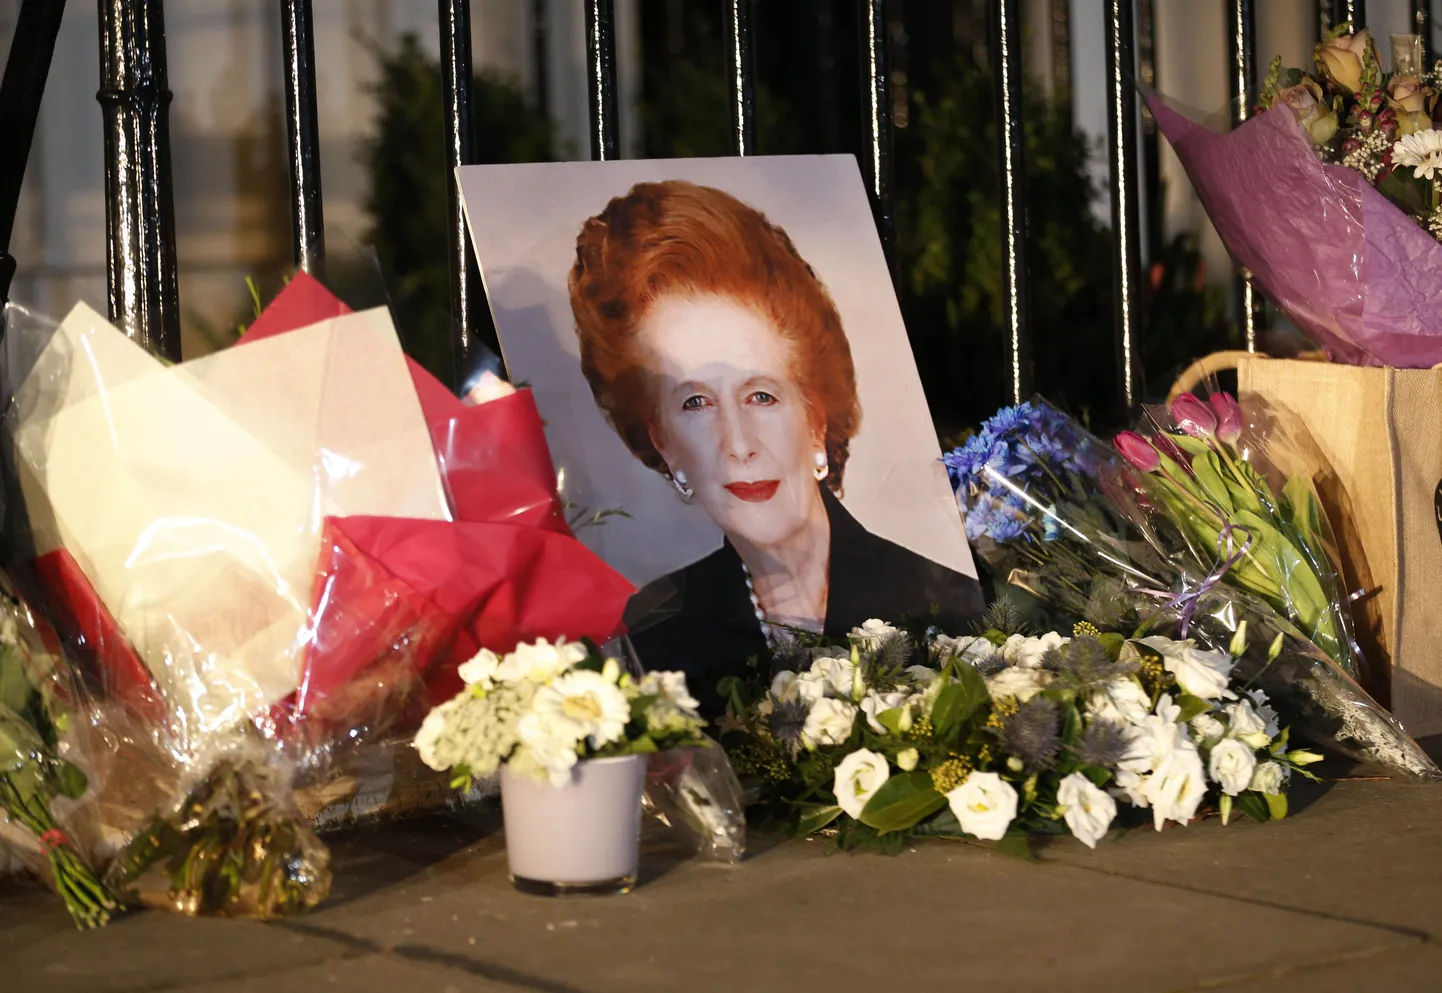 Margaret Thatcheri Londoni kodu esine hakkas eile pärast endise peaministri surmateadet mälestajate lilledega täituma 

Londoni kodu ette toodud lilled eile.